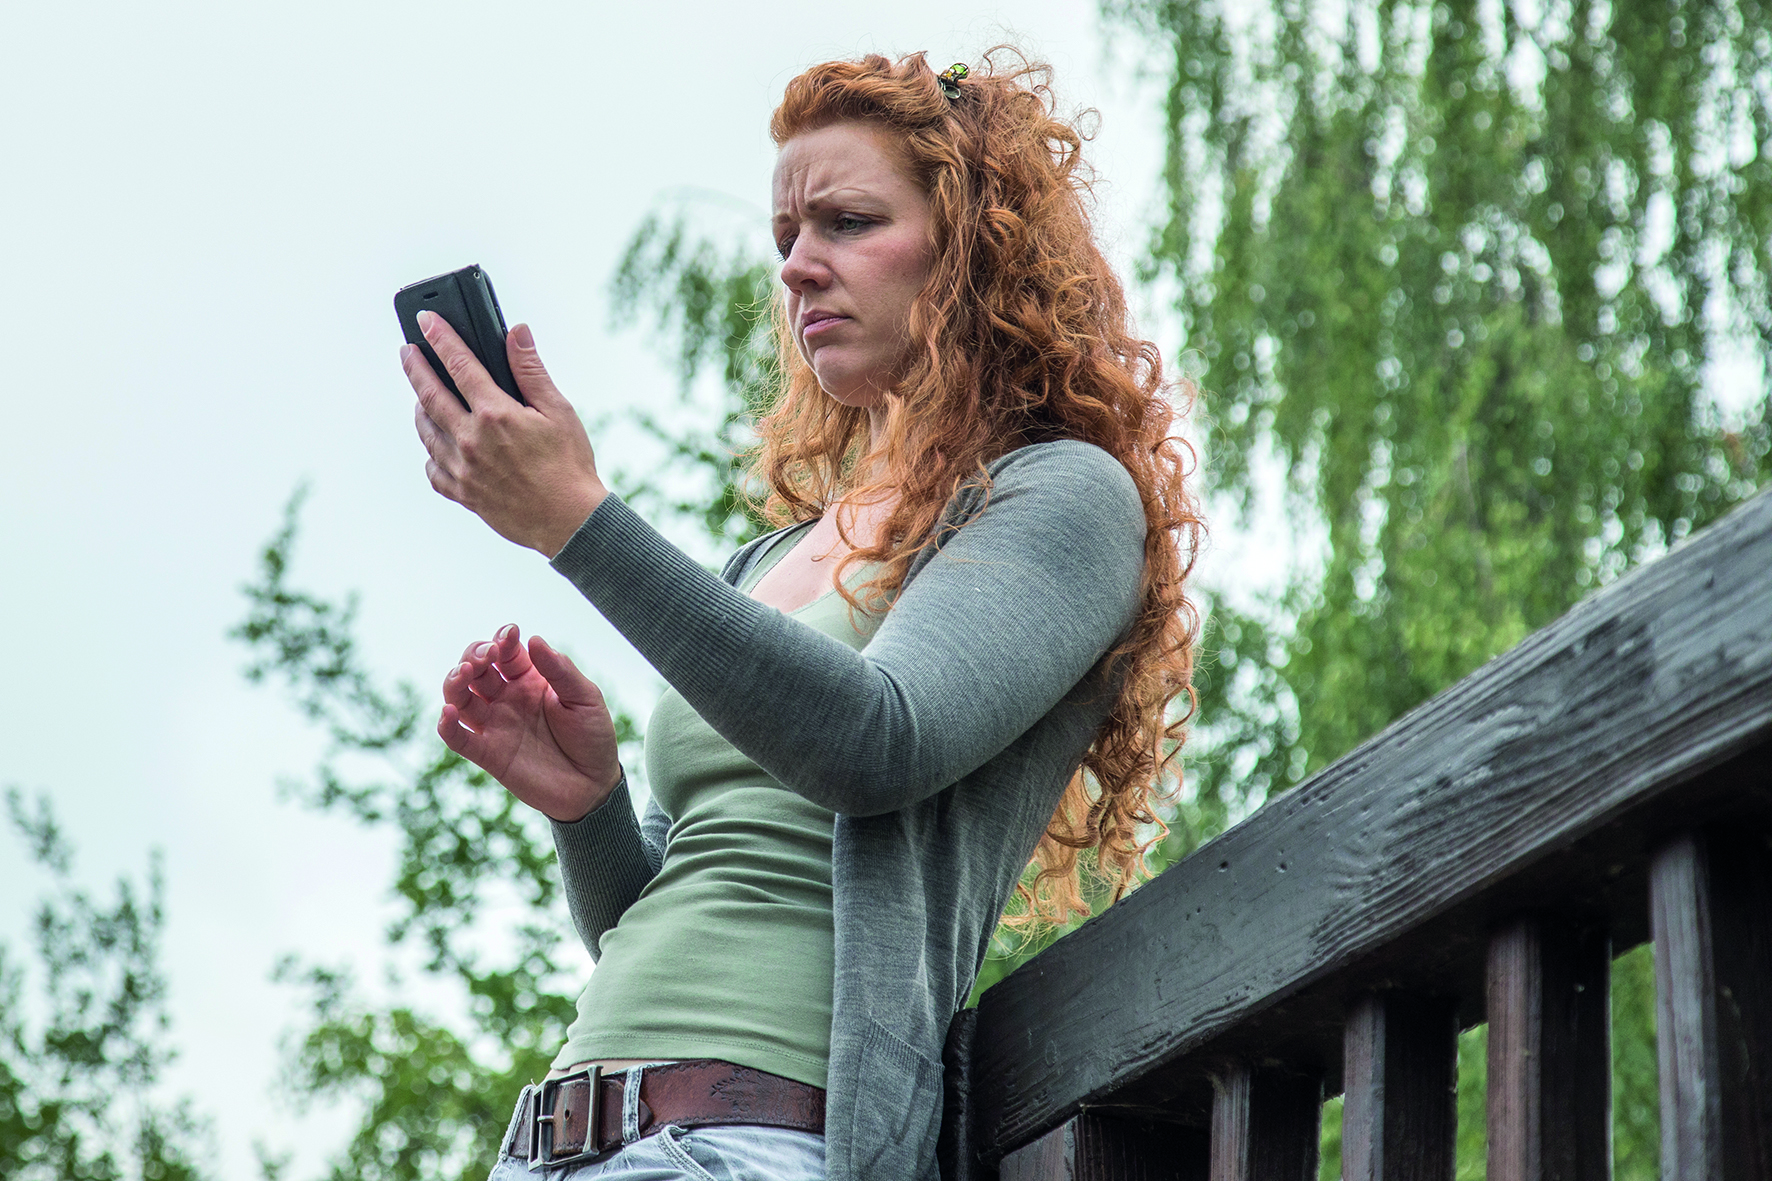 Eine junge Frau steht in einem Park auf einer Brücke und schaut auf ihr Smartphone